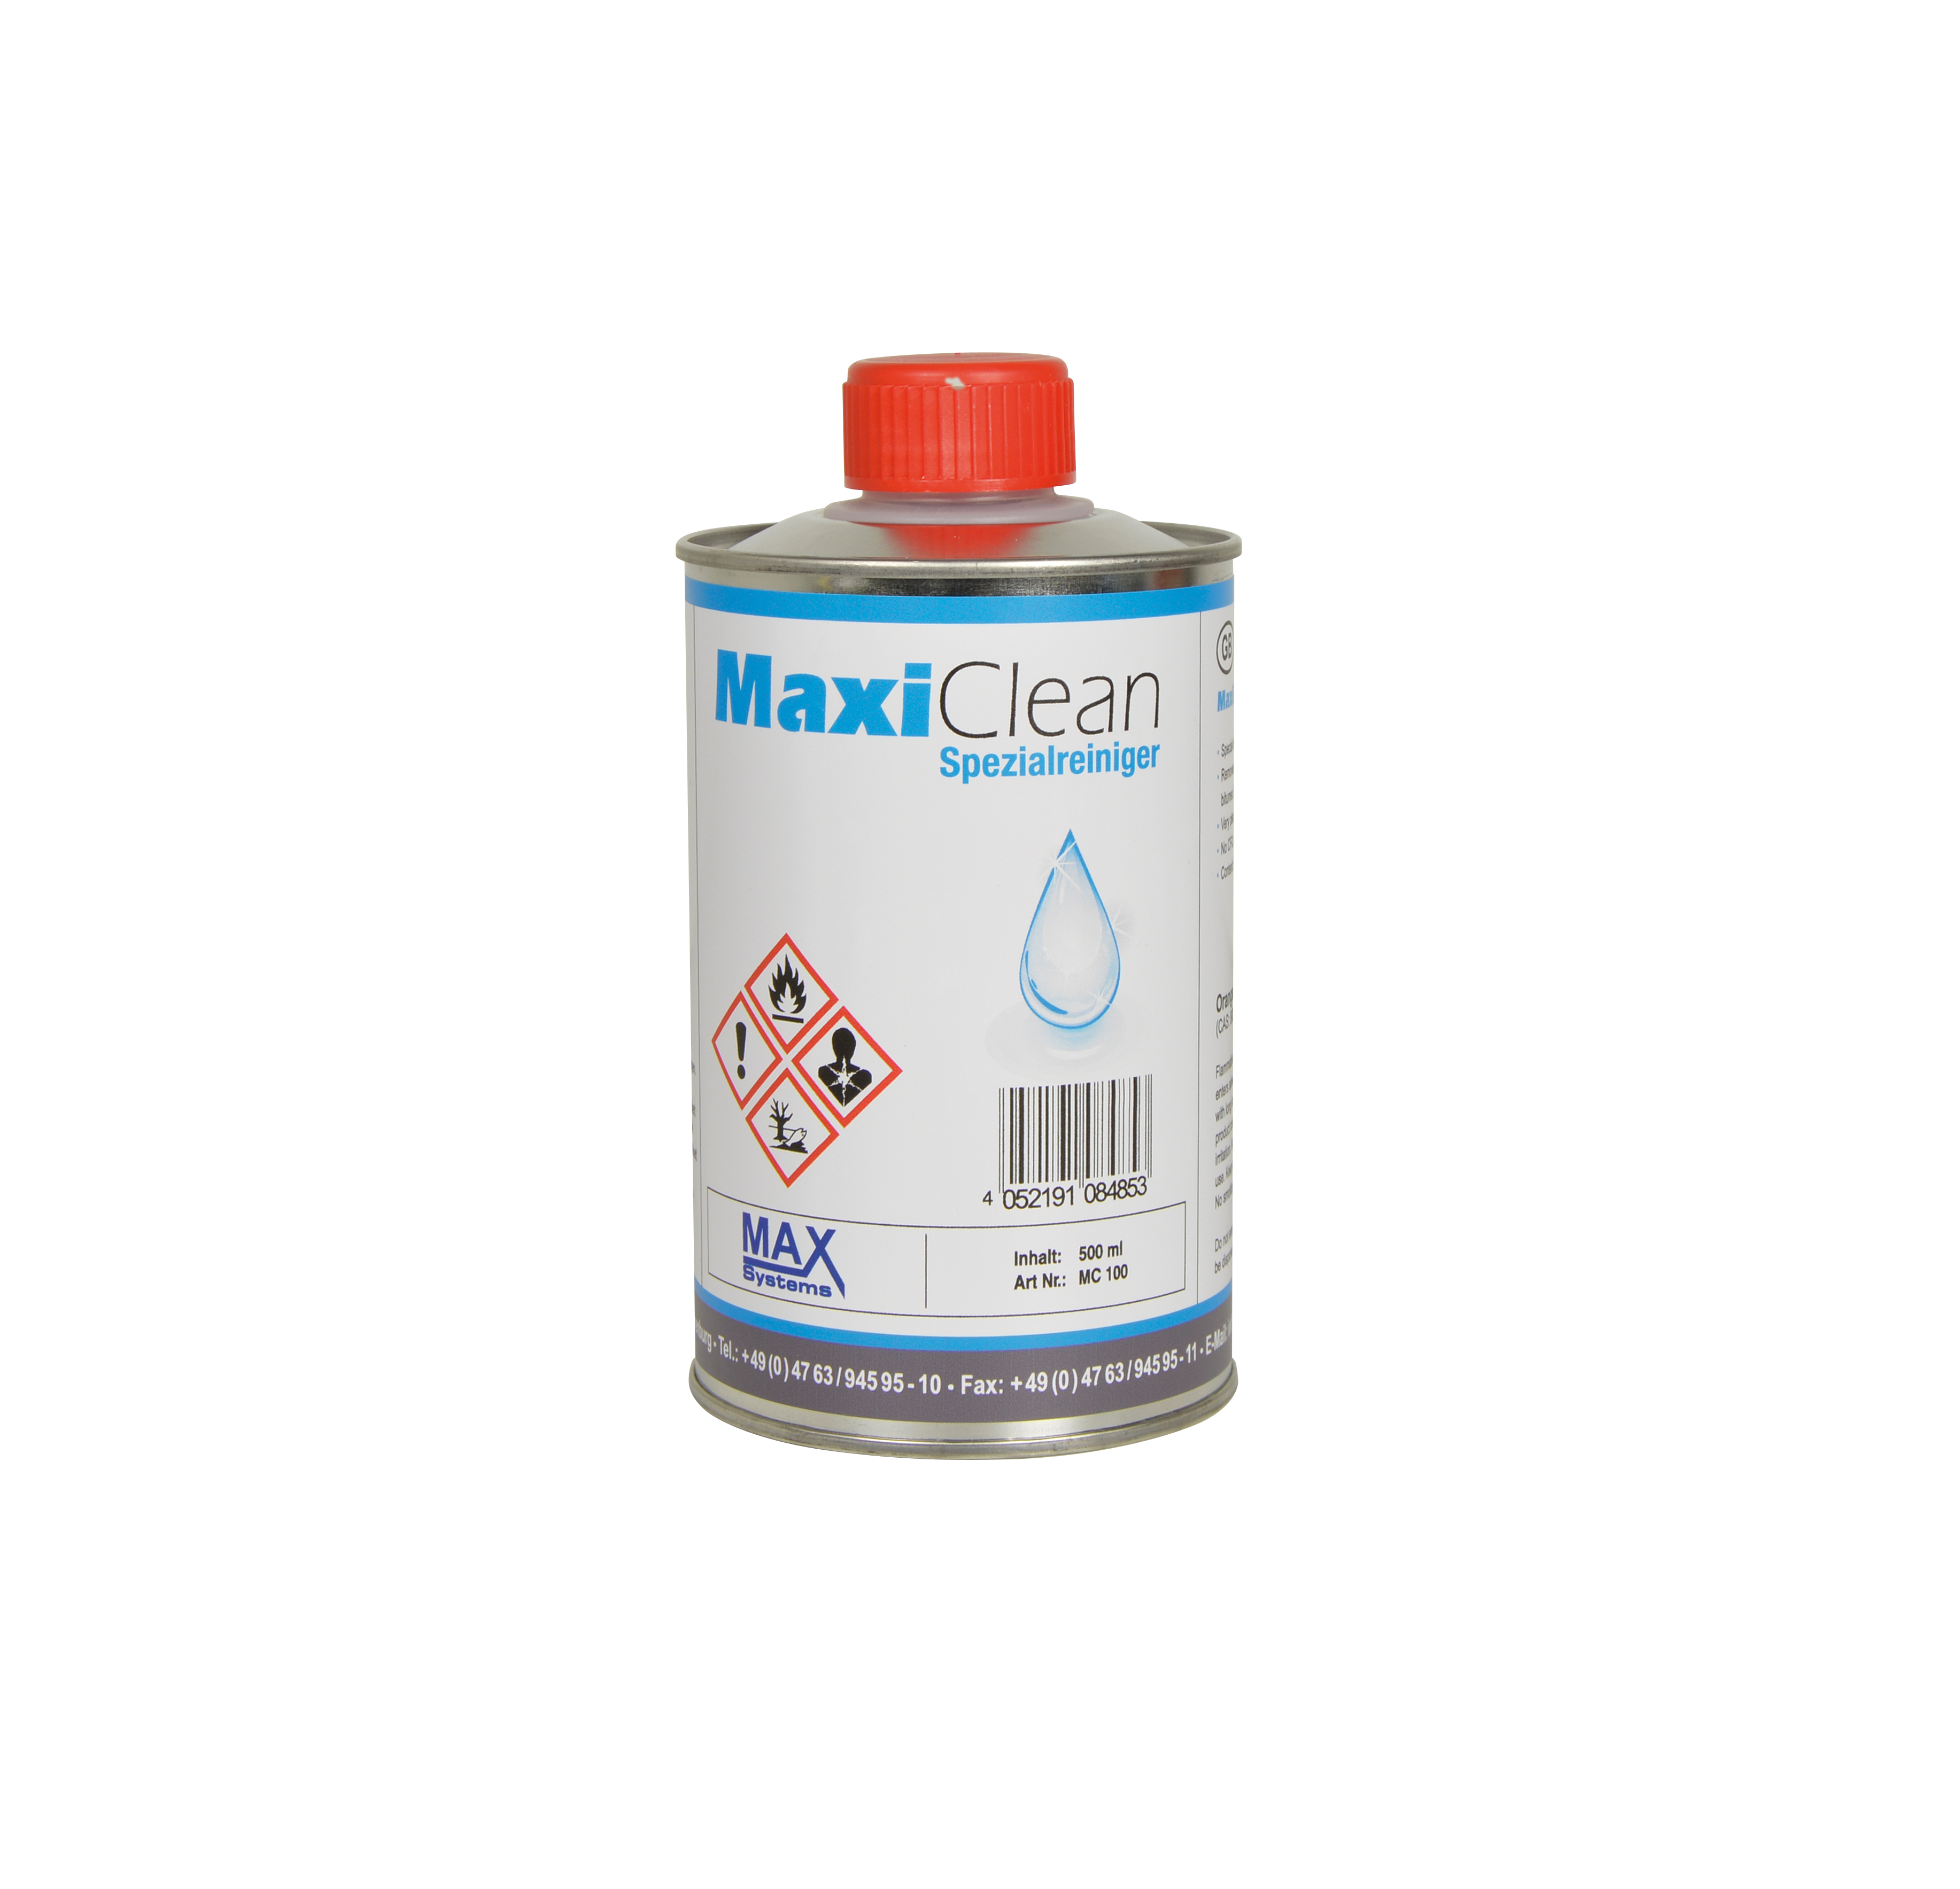 MaxiClean Spezialreiniger - 500 ml